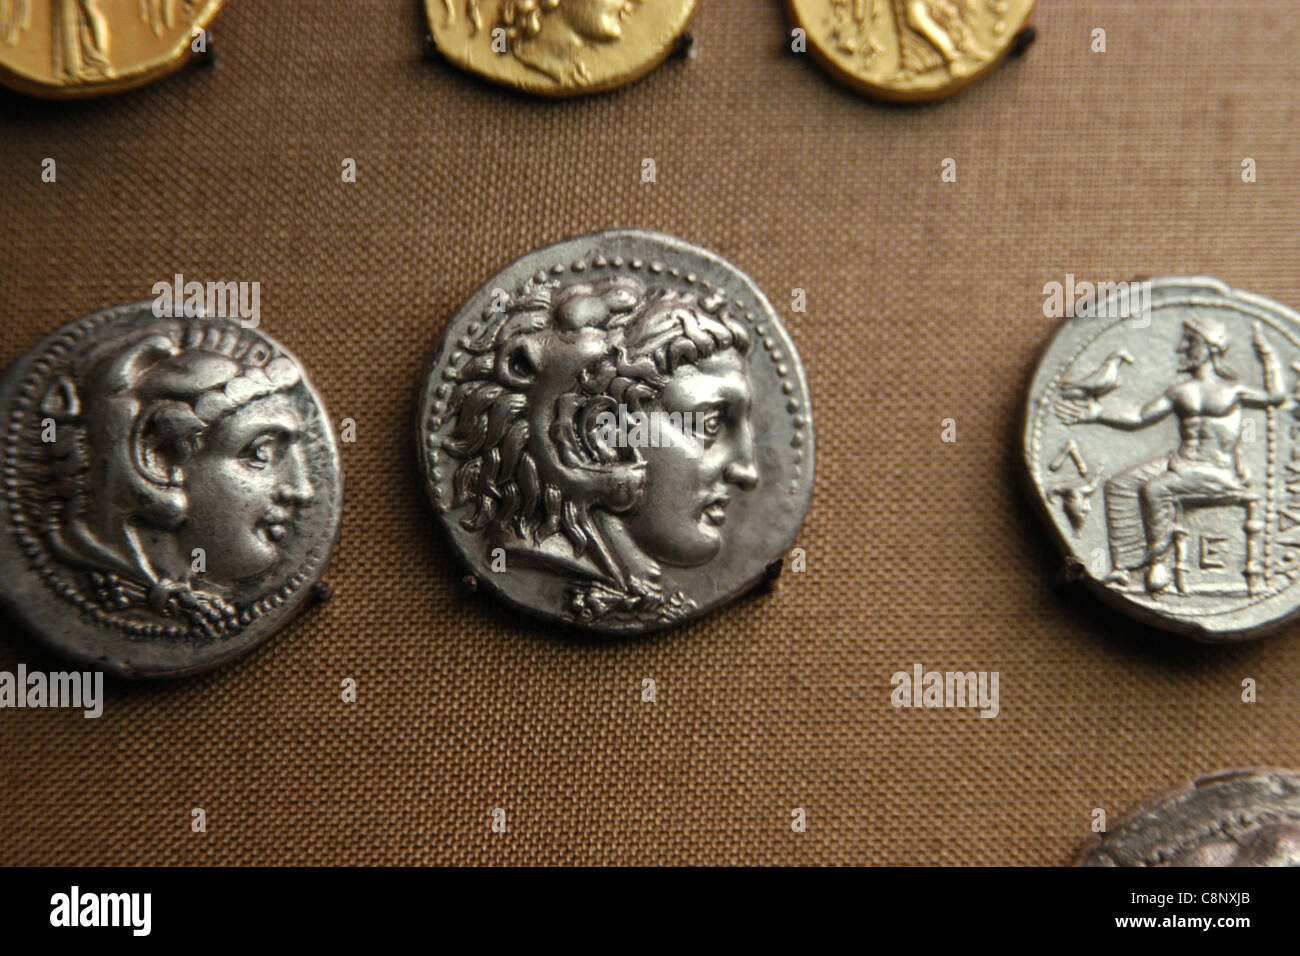 Monnaies Grecques antiques d'Alexandre le Grand à partir de la collection numismatique du Musée Pergamon de Berlin, Allemagne. Banque D'Images